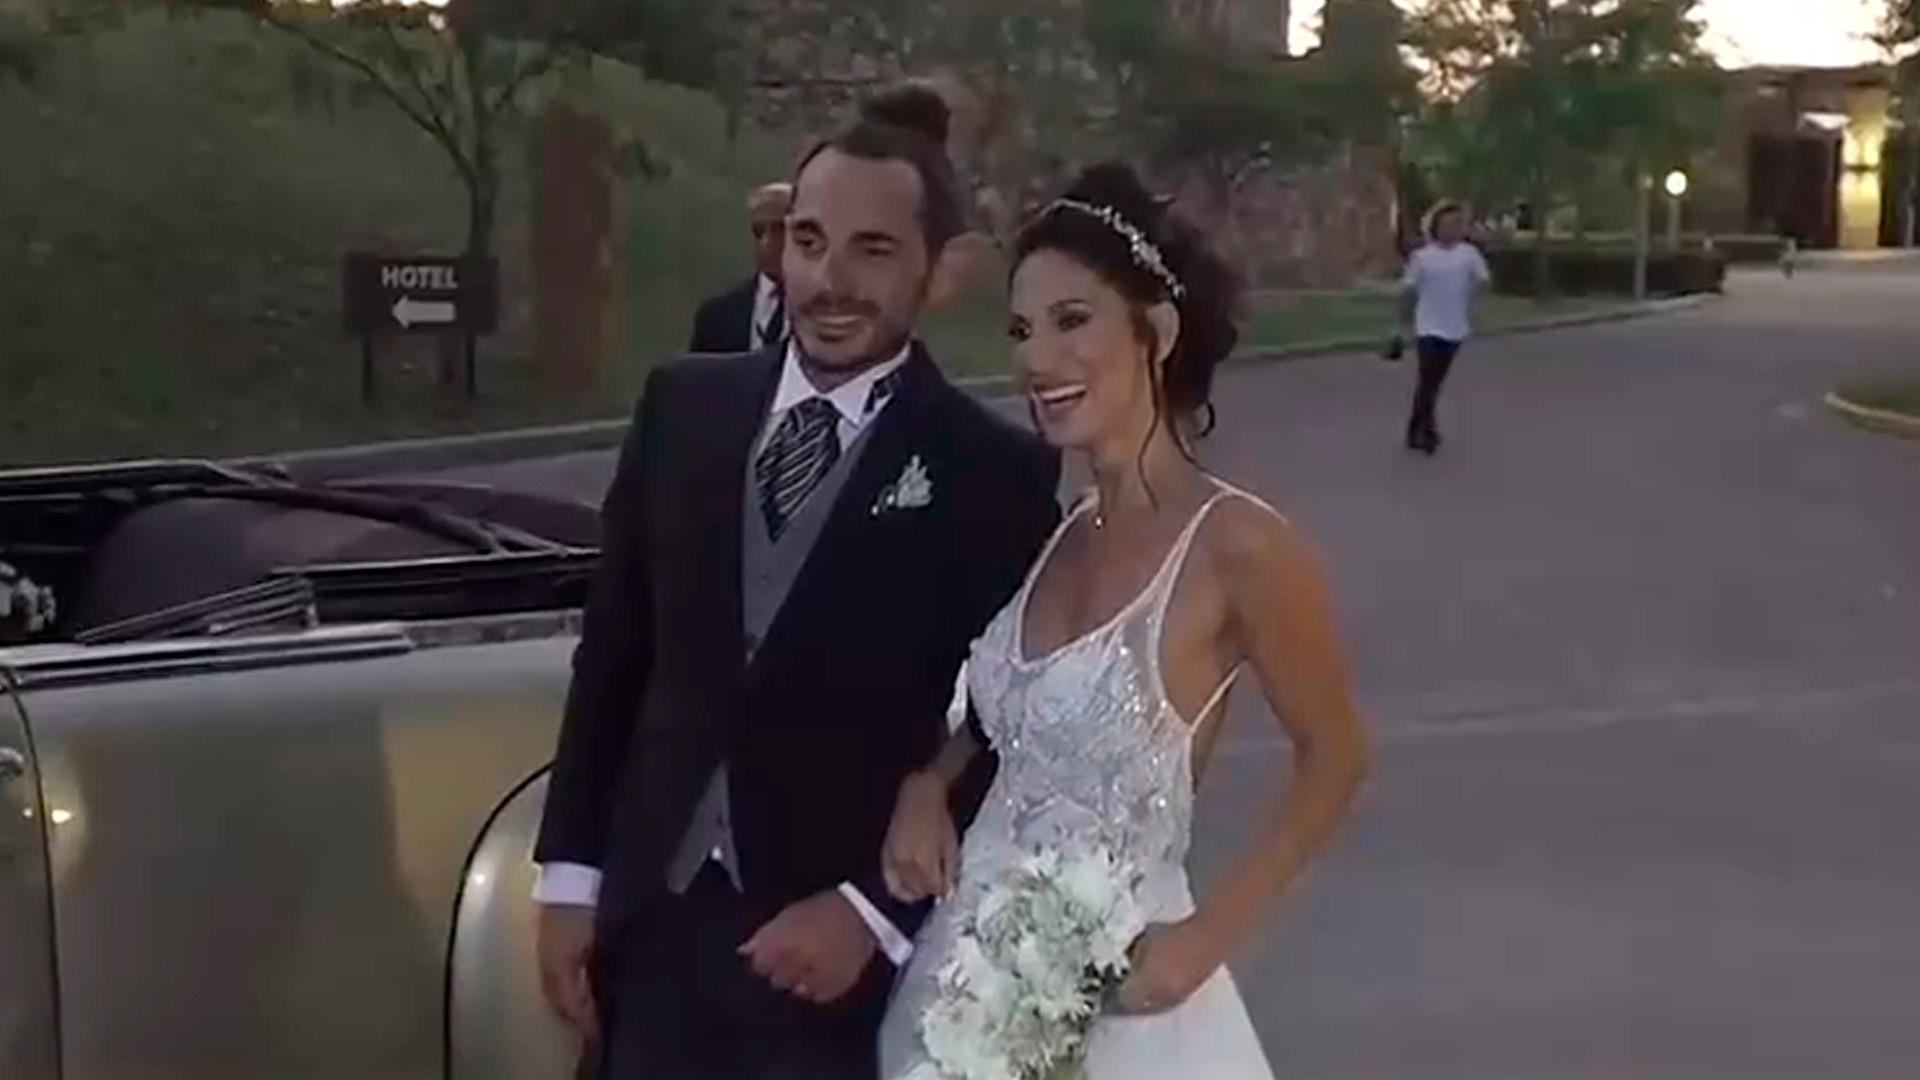 La boda de Silvina Escudero con Federico: un traje de novia reciclado, los ausentes a la fiesta y la intimidad por dentro